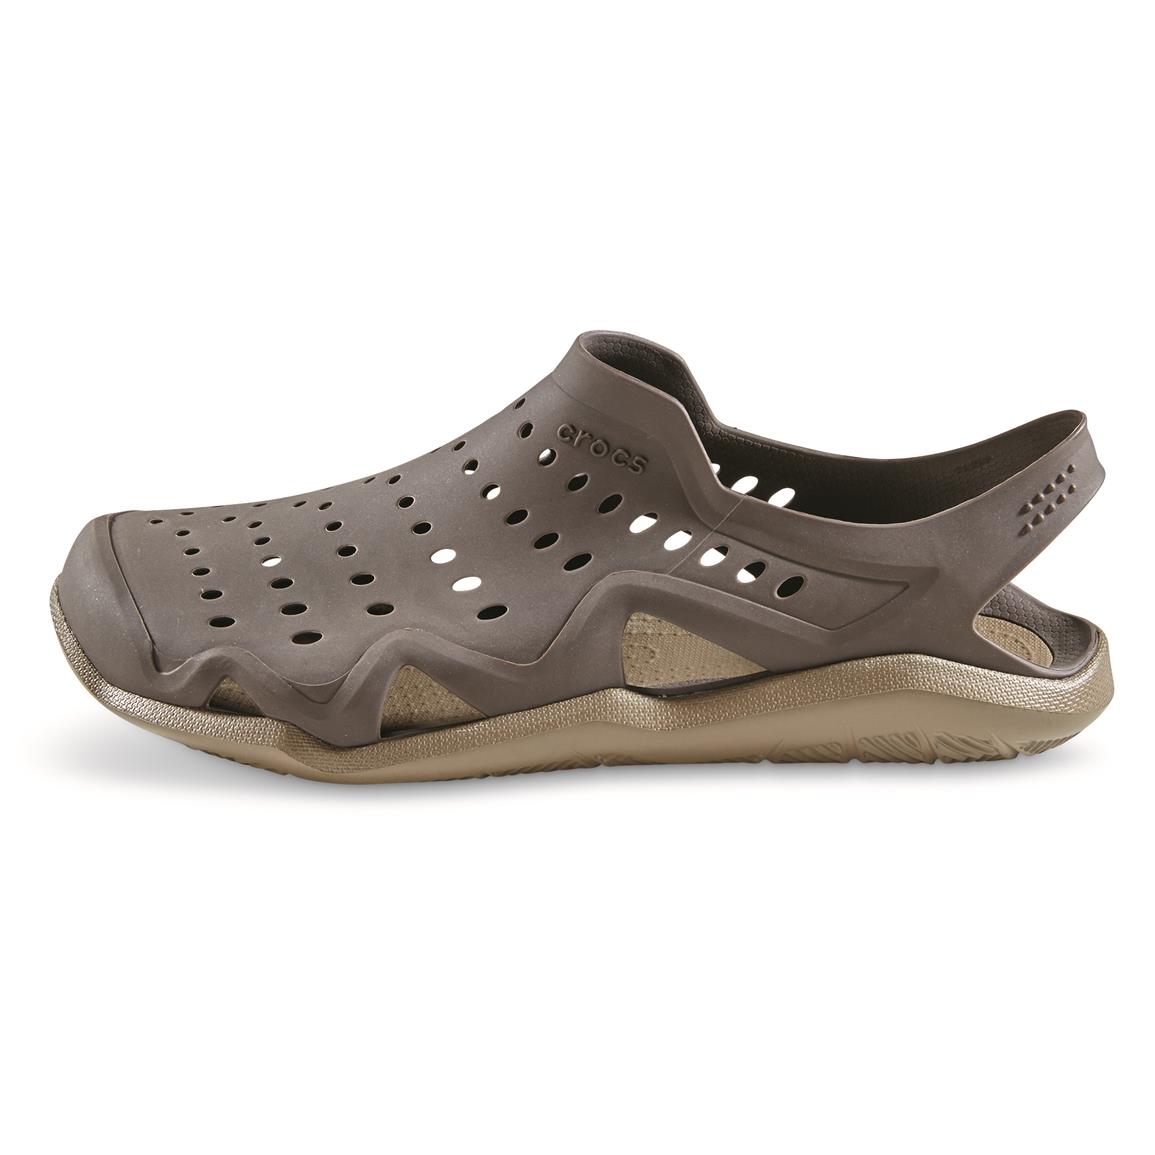 Crocs Men's Swiftwater Wave Water Shoes - 676206, Sandals & Flip Flops ...